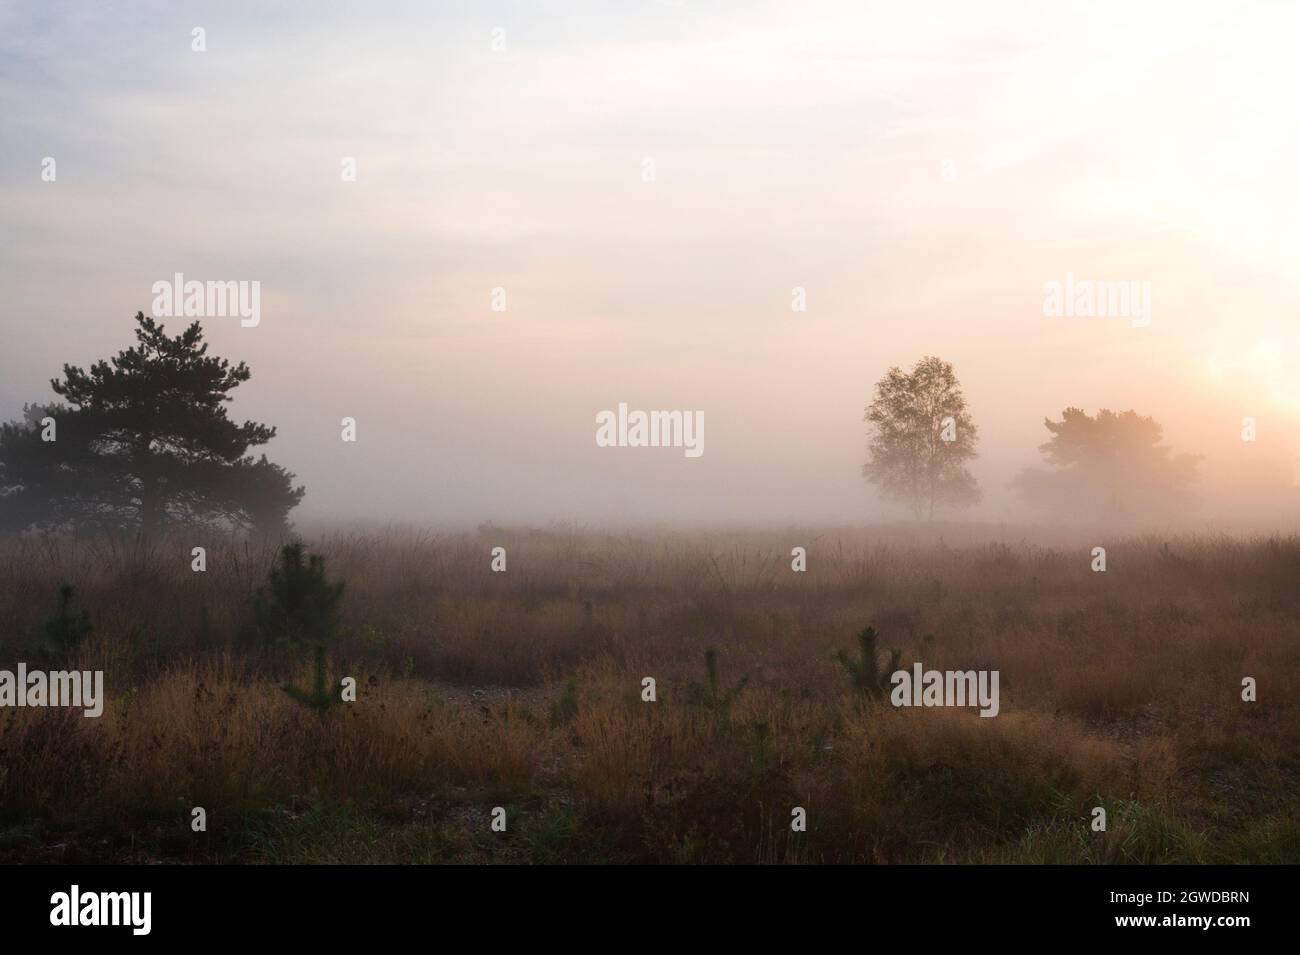 Morning landscape with low fog over heathland, Veluwe, the Netherlands Stock Photo